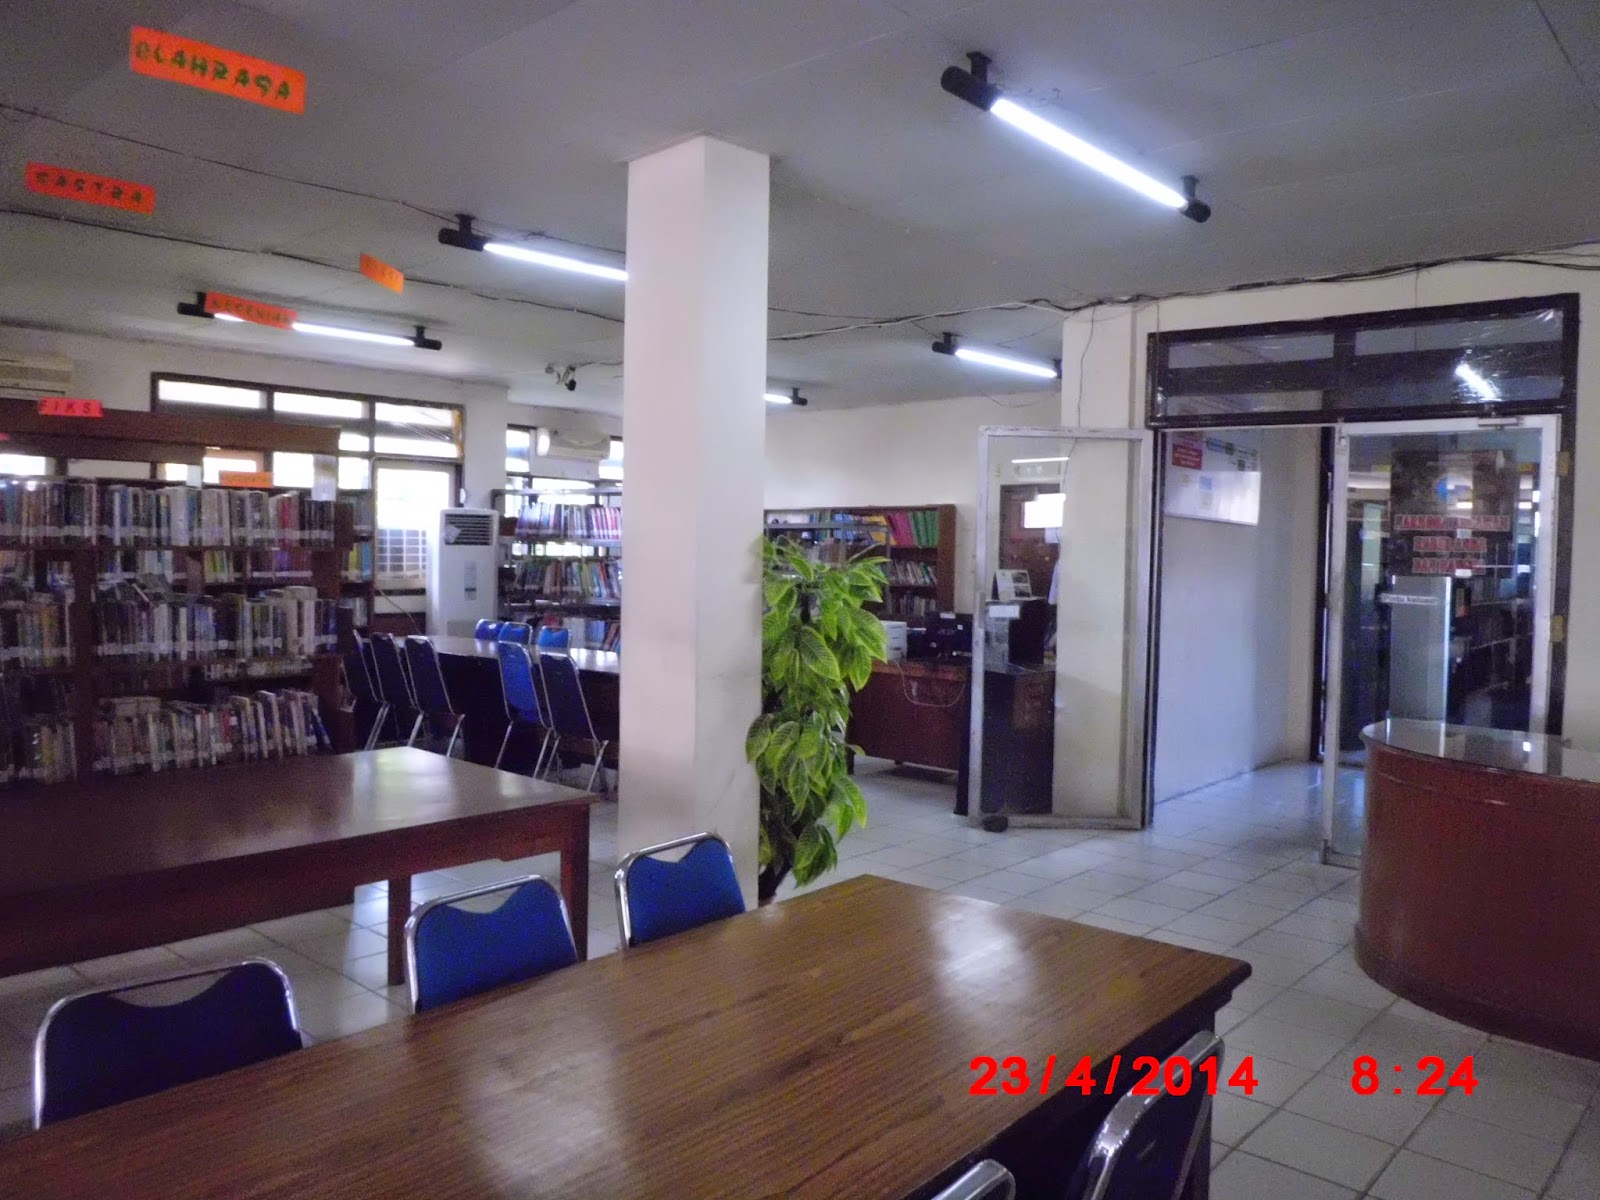 MY MURNI: Perpustakaan Daerah, Jambi